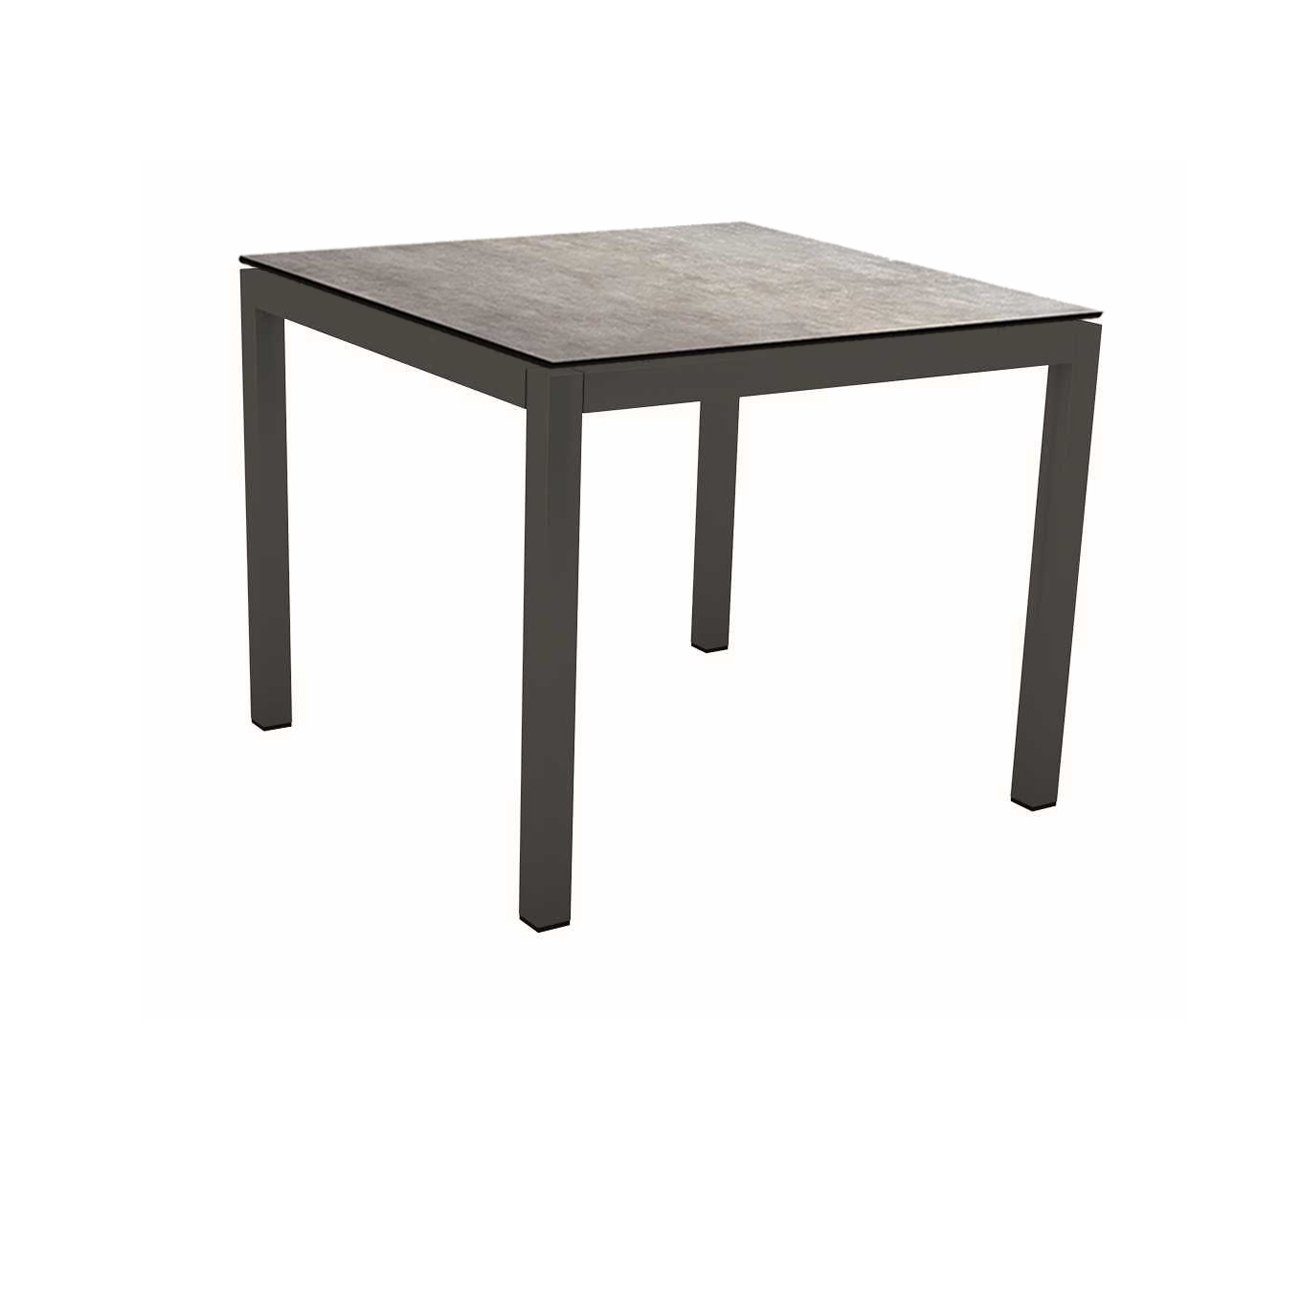 Stern Tischsystem Gartentisch, Gestell Aluminium anthrazit, Tischplatte HPL Metallic grau, Maße: 90x90 cm